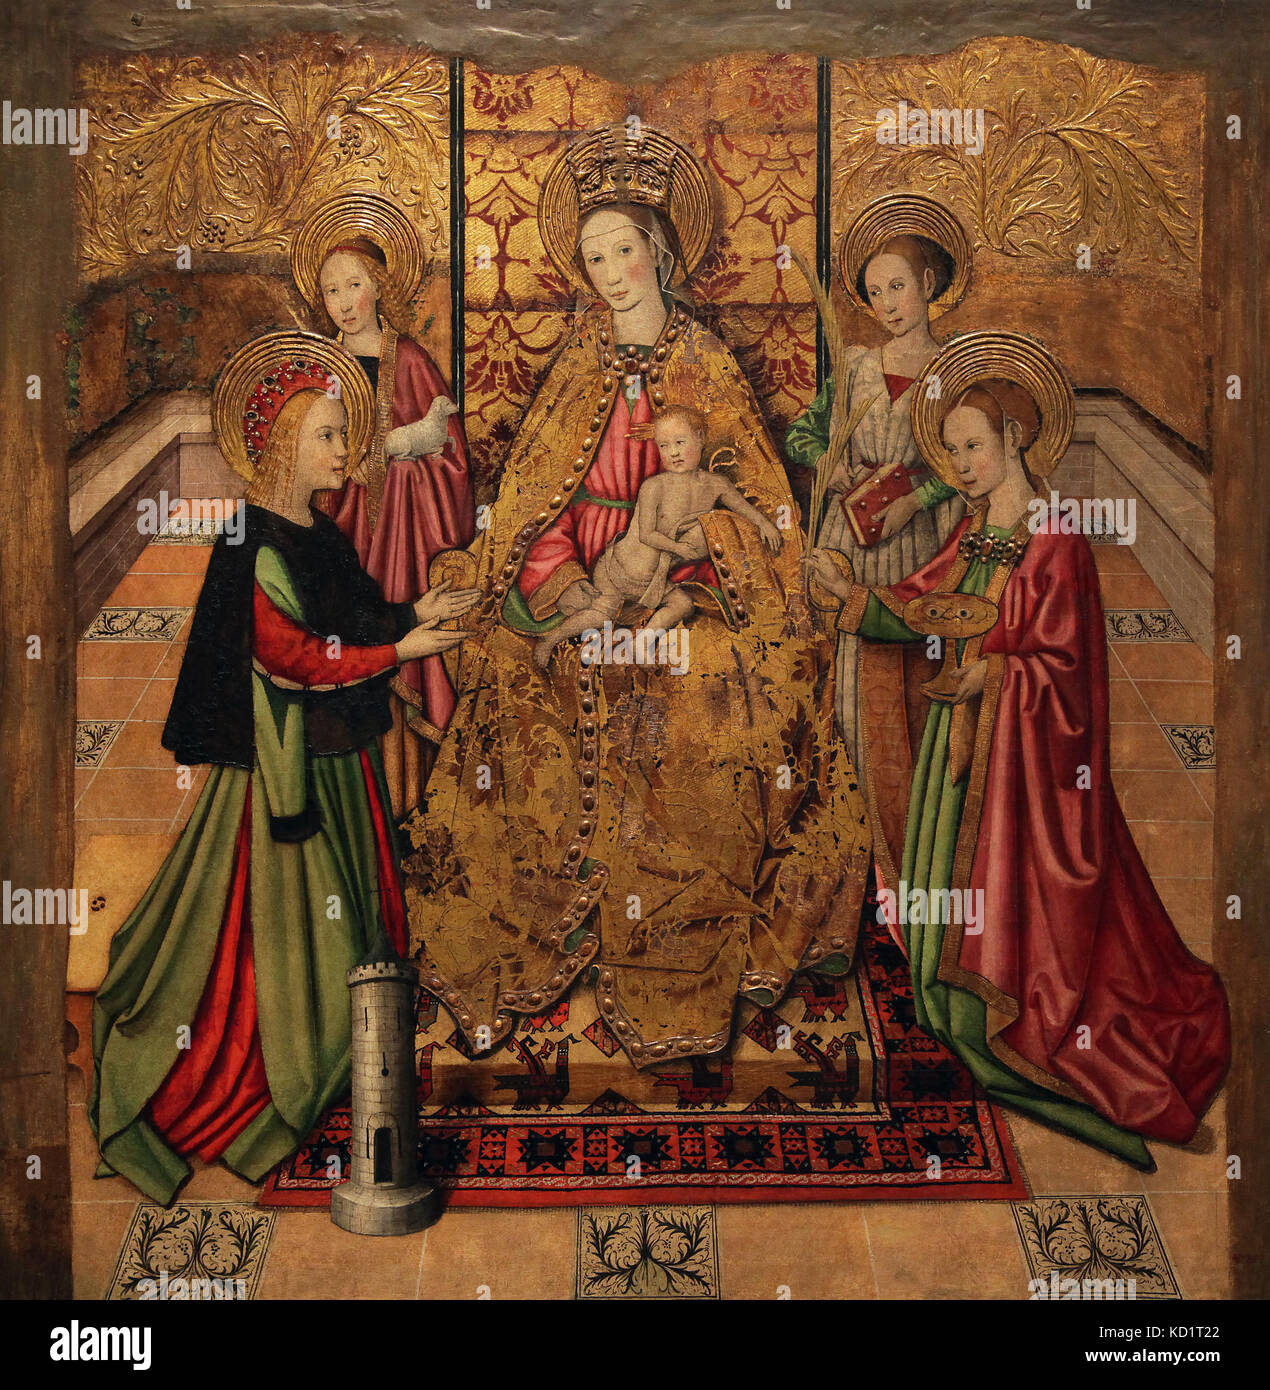 Mare de Deu ich Santes die Jungfrau und der Heiligen durch Jaume Huguet 1412-1492 katalanischer Maler. mittelalterlichen gotischen Kunst. Spanien Stockfoto